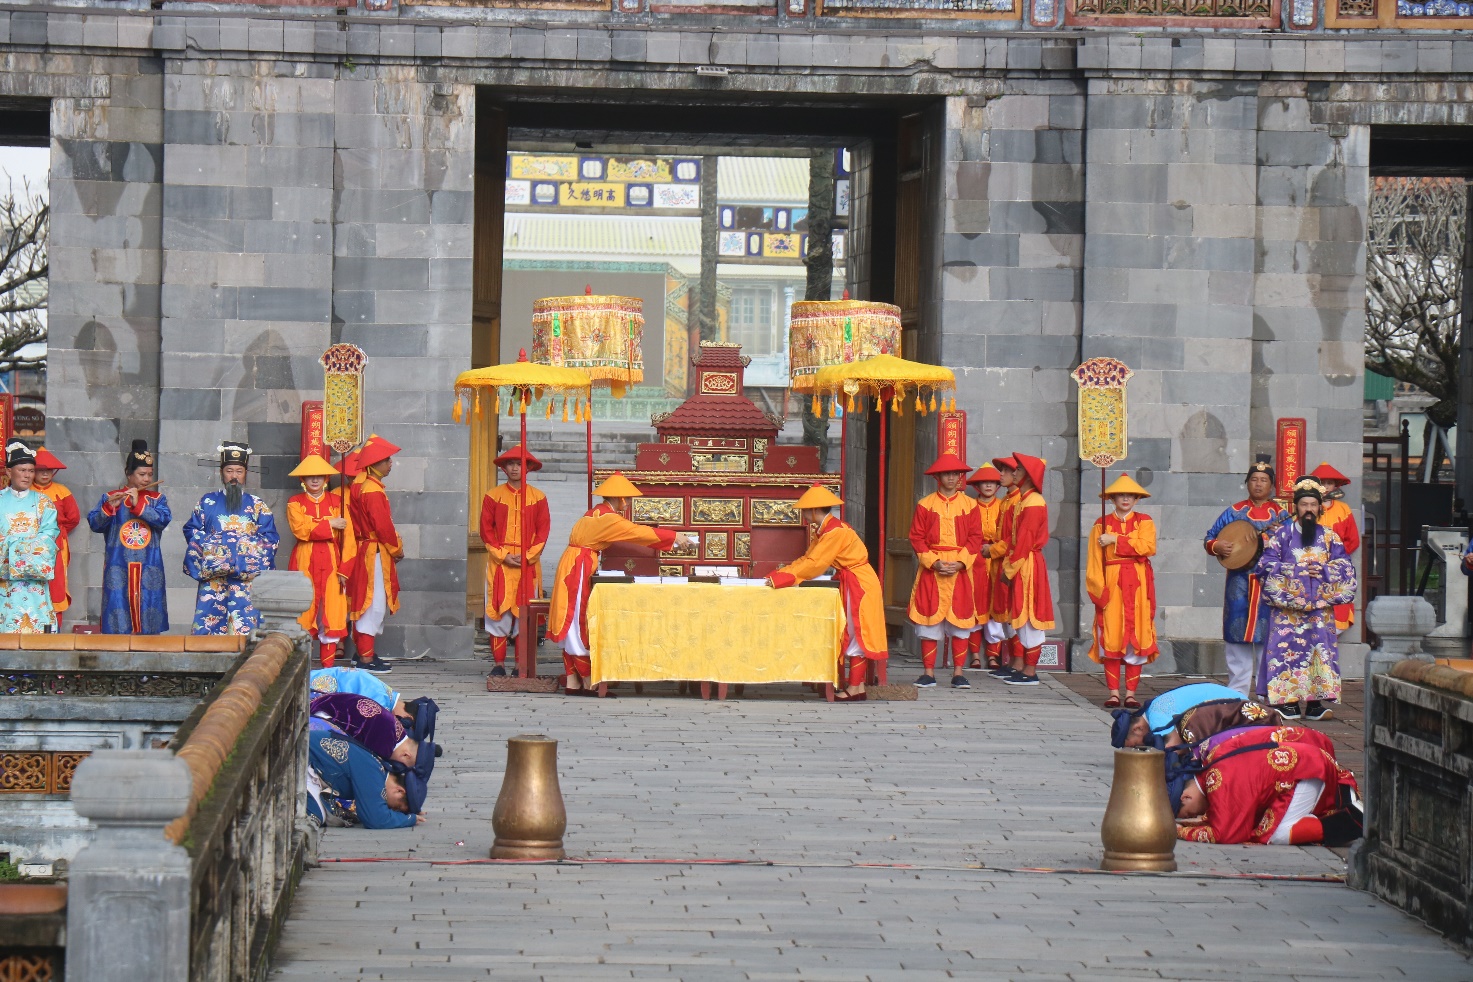 Đầu năm vào Hoàng cung Huế xem tái hiện lễ Ban sóc triều Nguyễn - 1